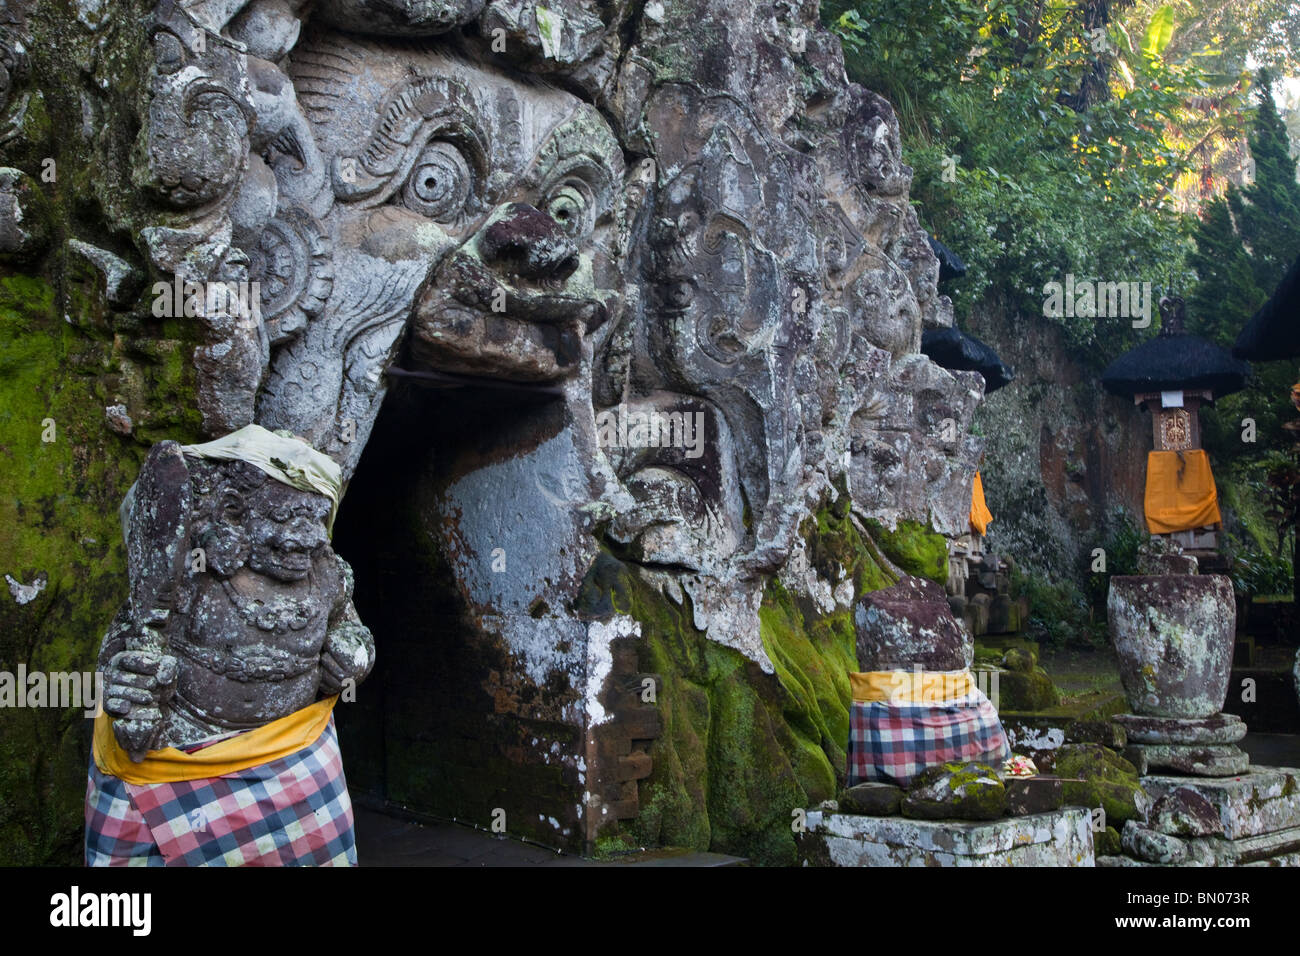 Goa Gajah, allgemein bekannt als die Elefantenhöhle befindet sich in einem steilen Tal etwas außerhalb von Ubud in der Nähe des Dorfes Bedulu. Stockfoto